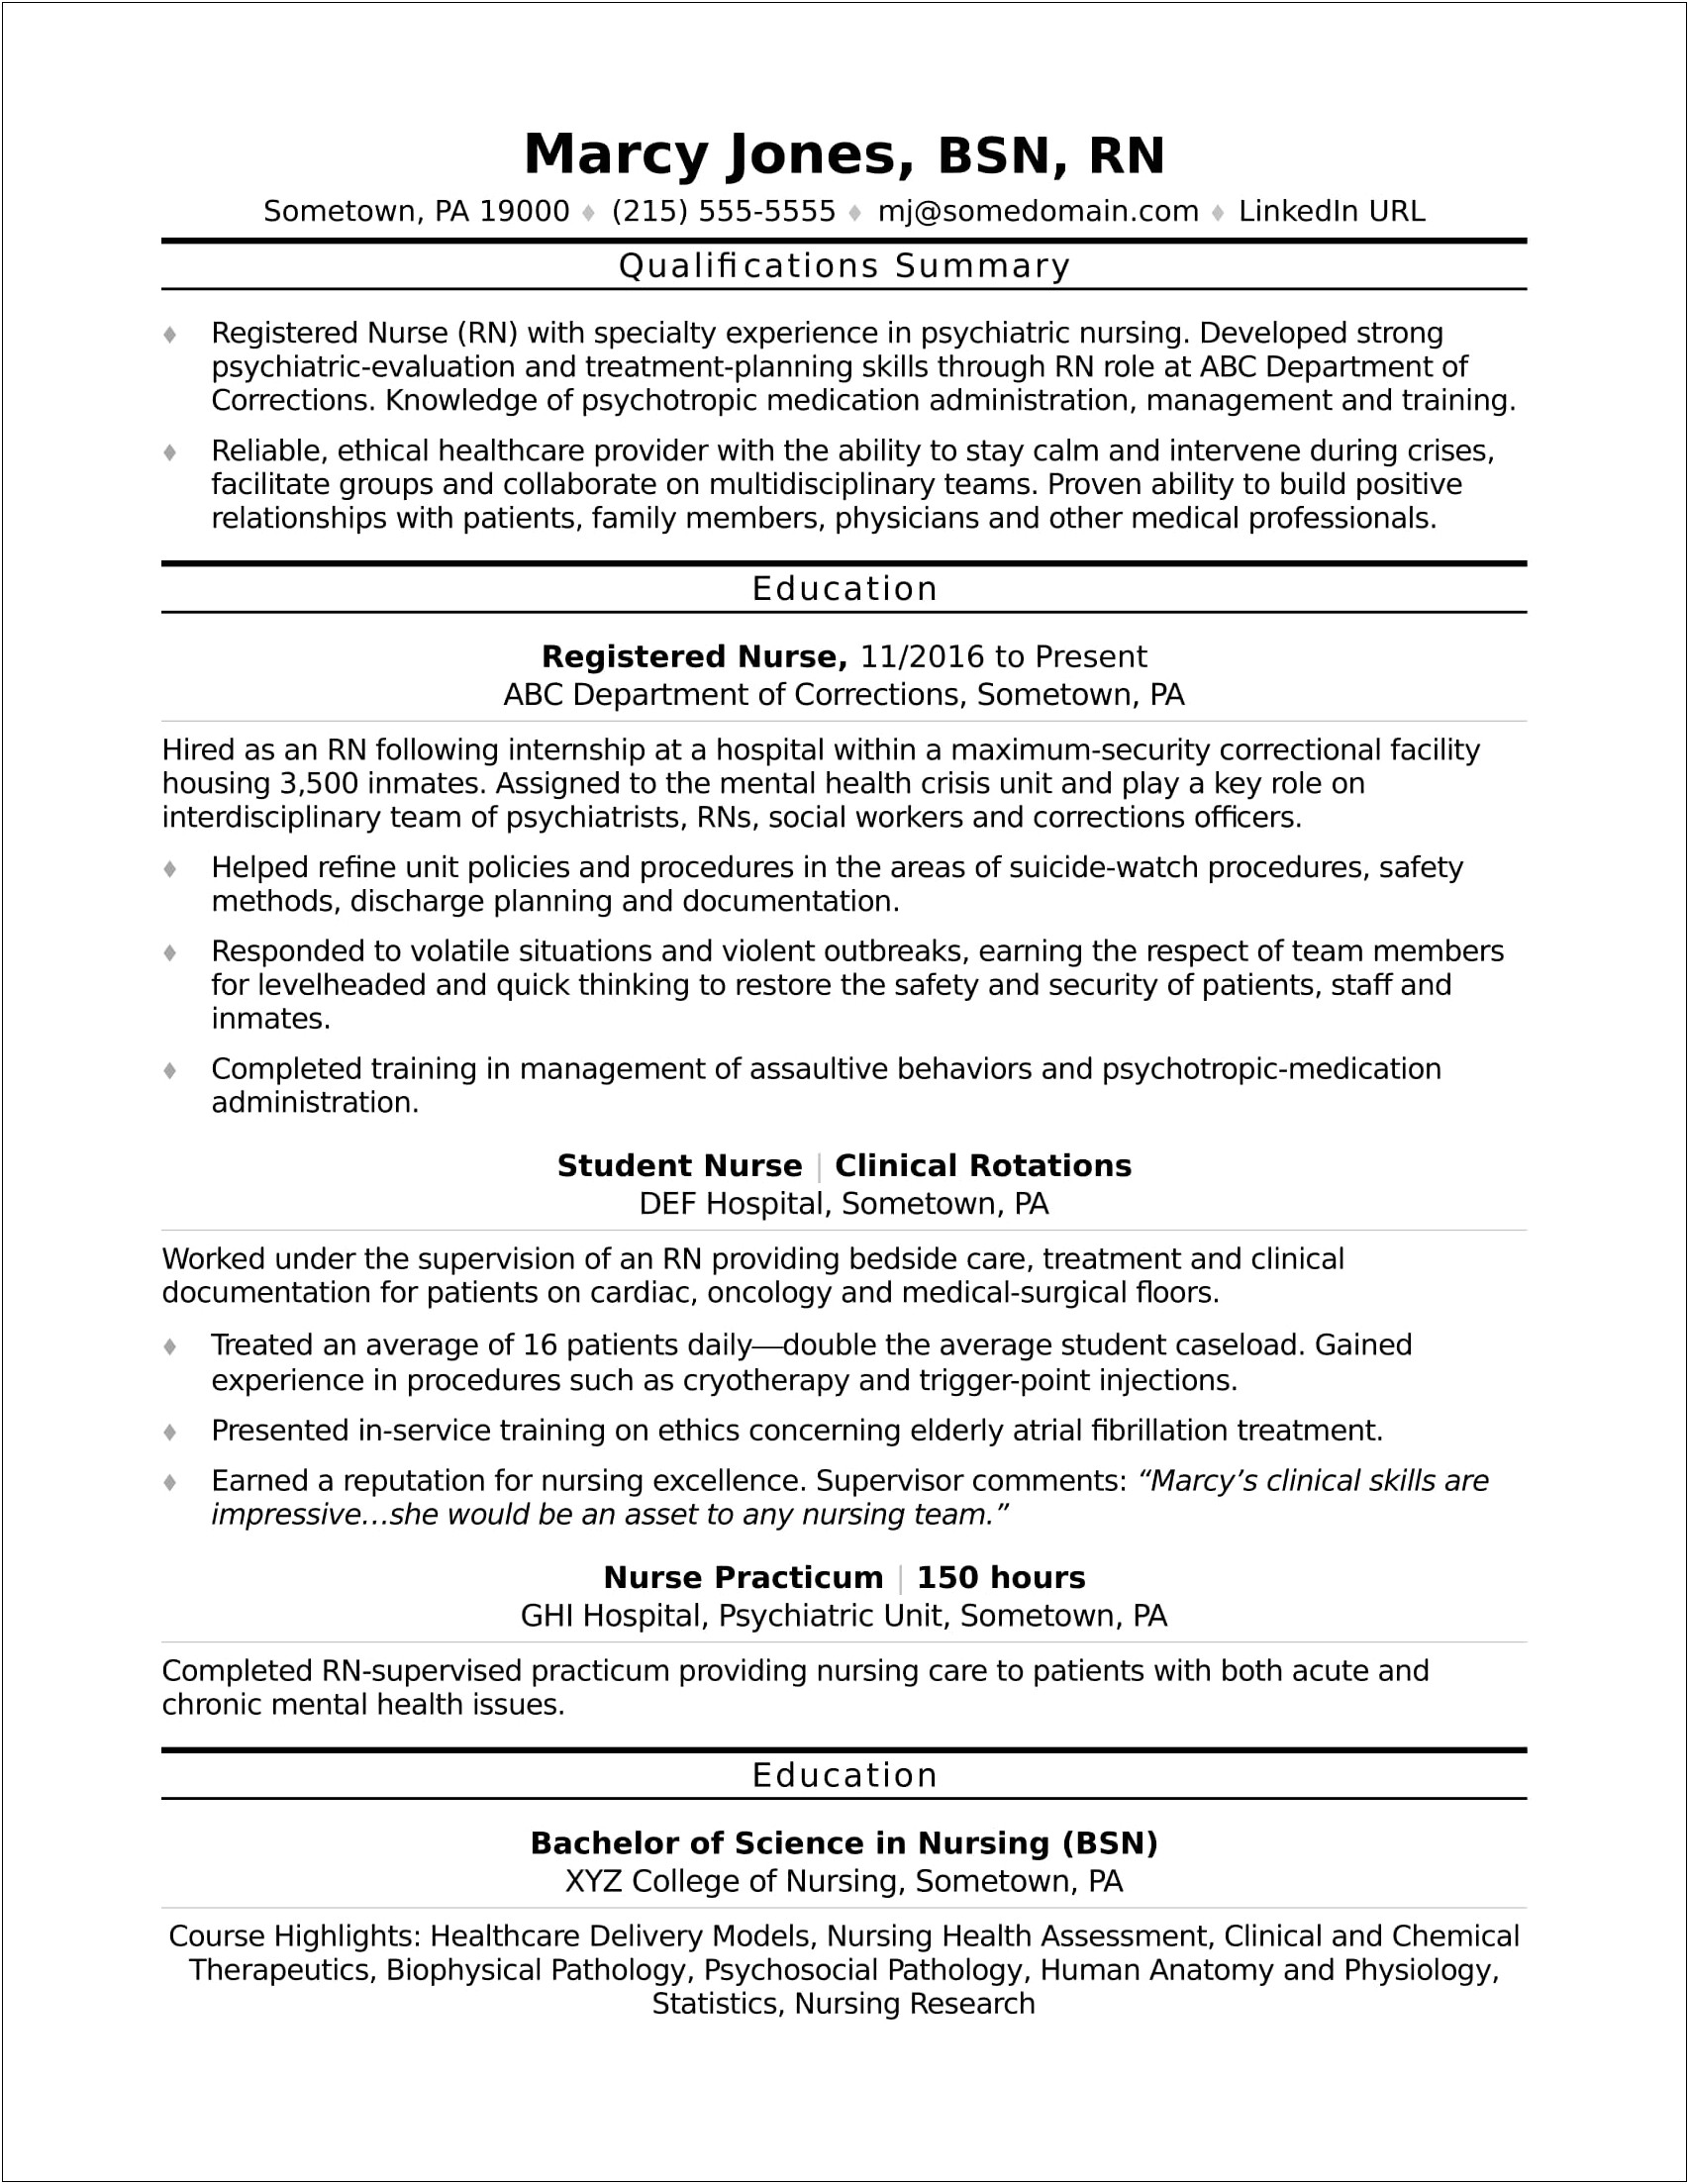 Sample Resume For Entry Level Hospital Job